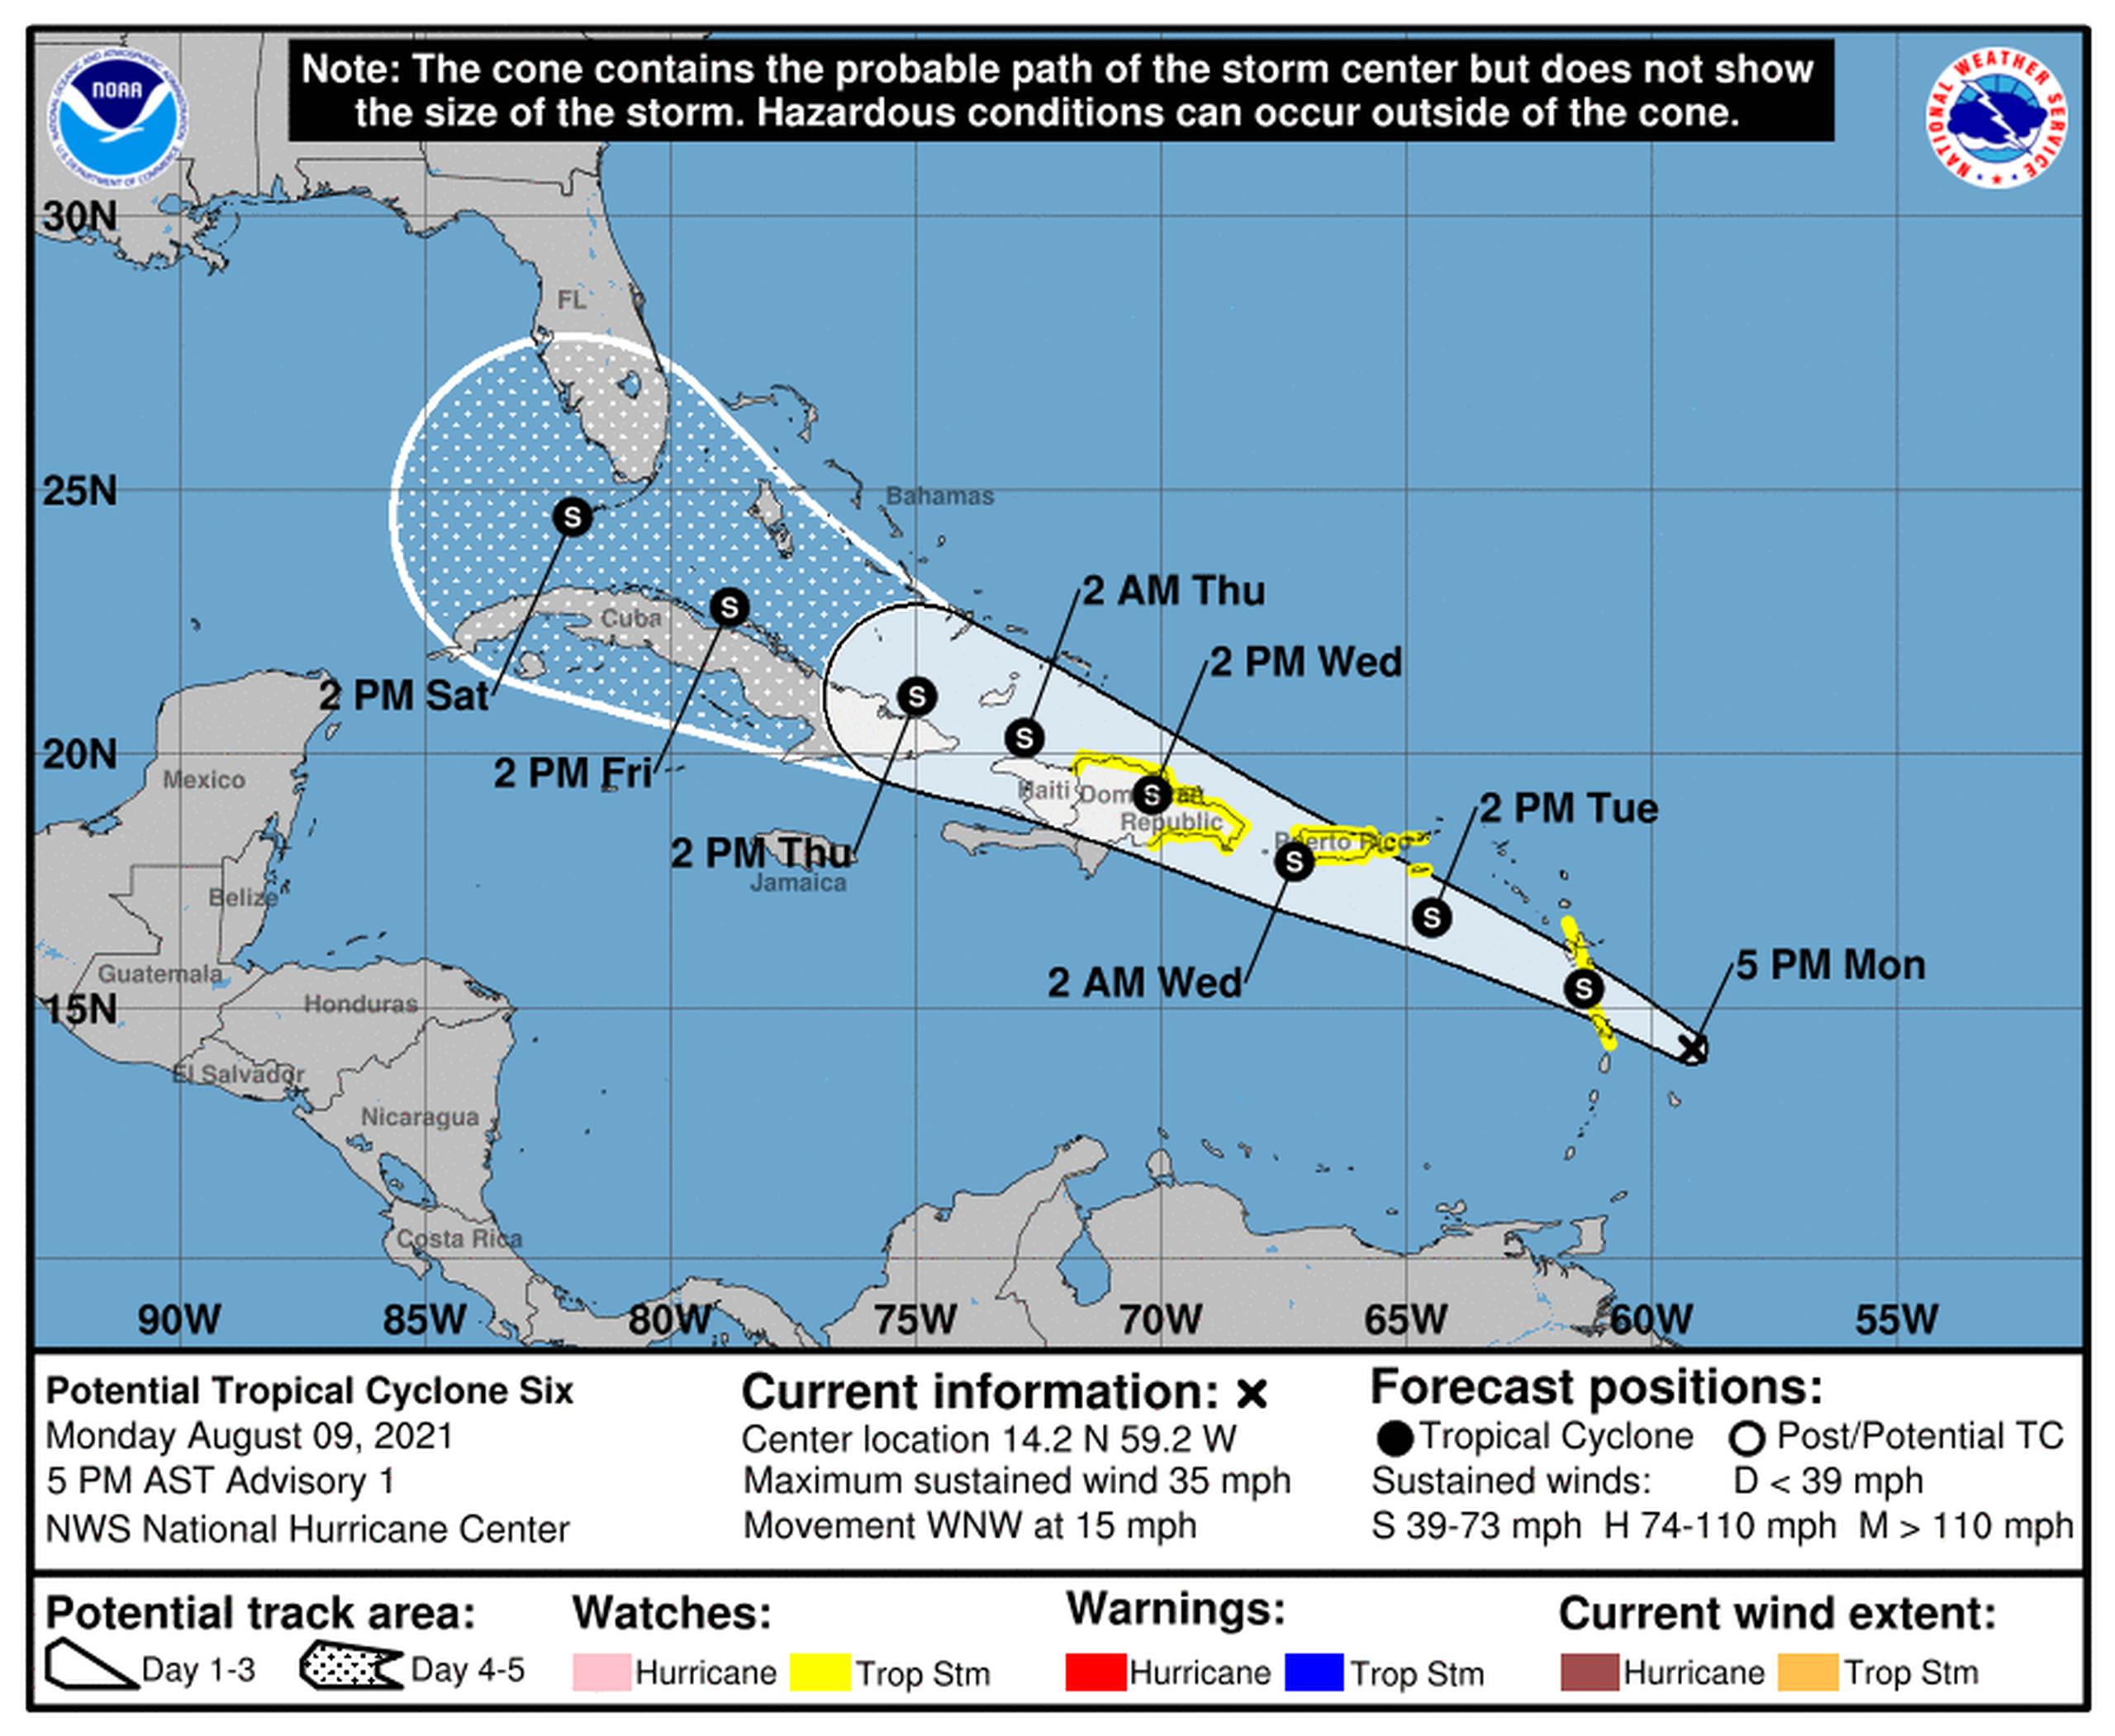 Imagen del cono de incertidumbre del Potencial Ciclón Tropical 6 y vigilancia de tormenta tropical para Puerto Rico.